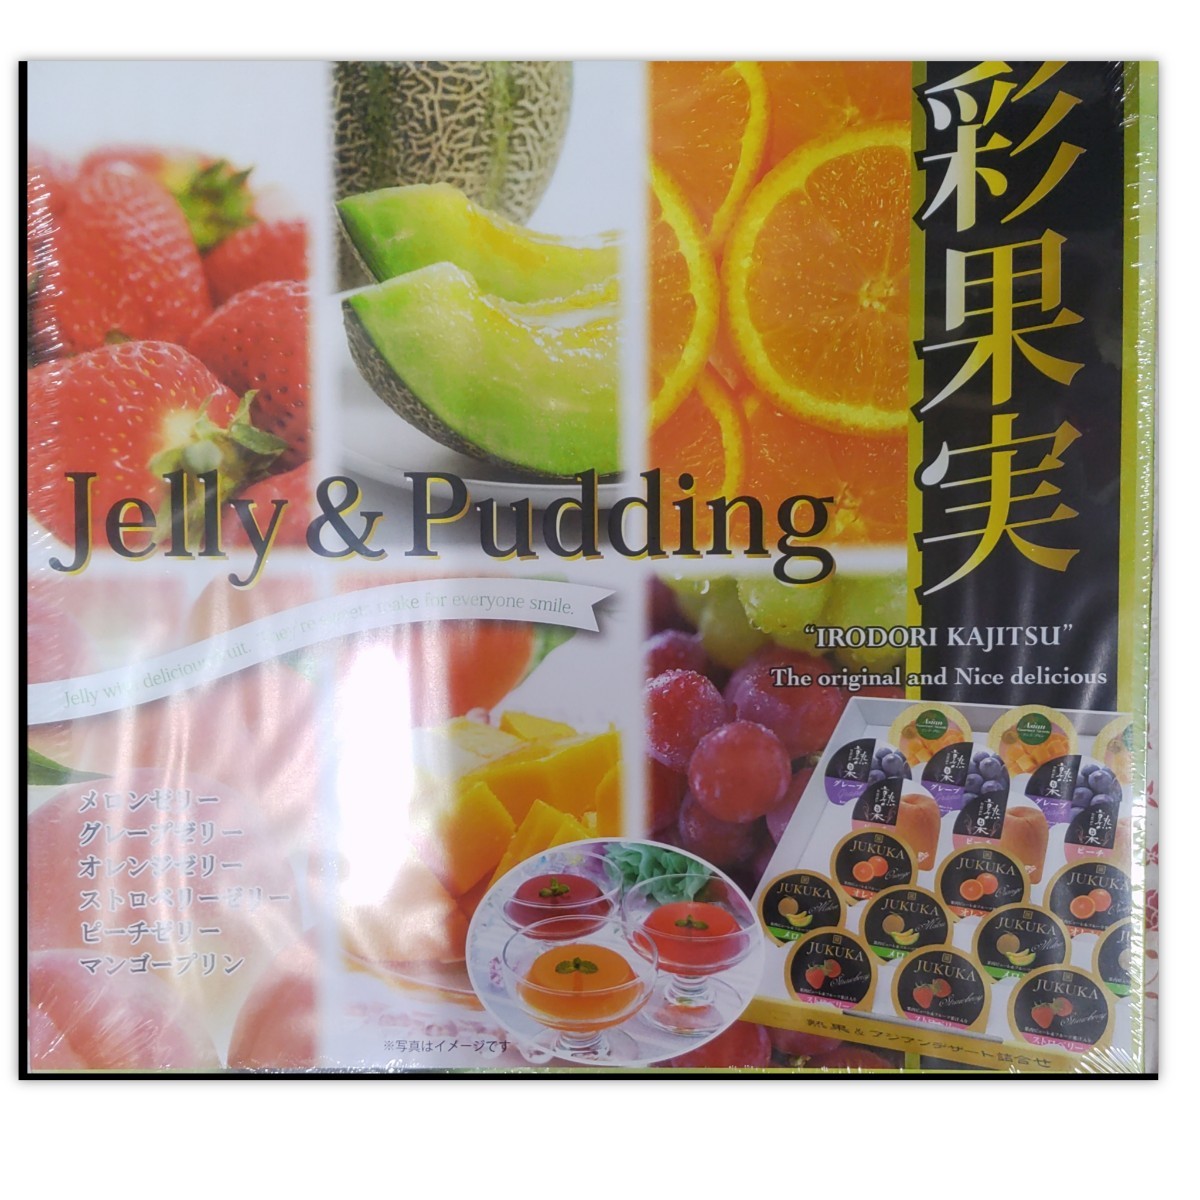 同梱 送料無料 Jelly  Pudding 彩果実 1箱 (52g×20) 果物ゼリー デザート詰め合わせ 